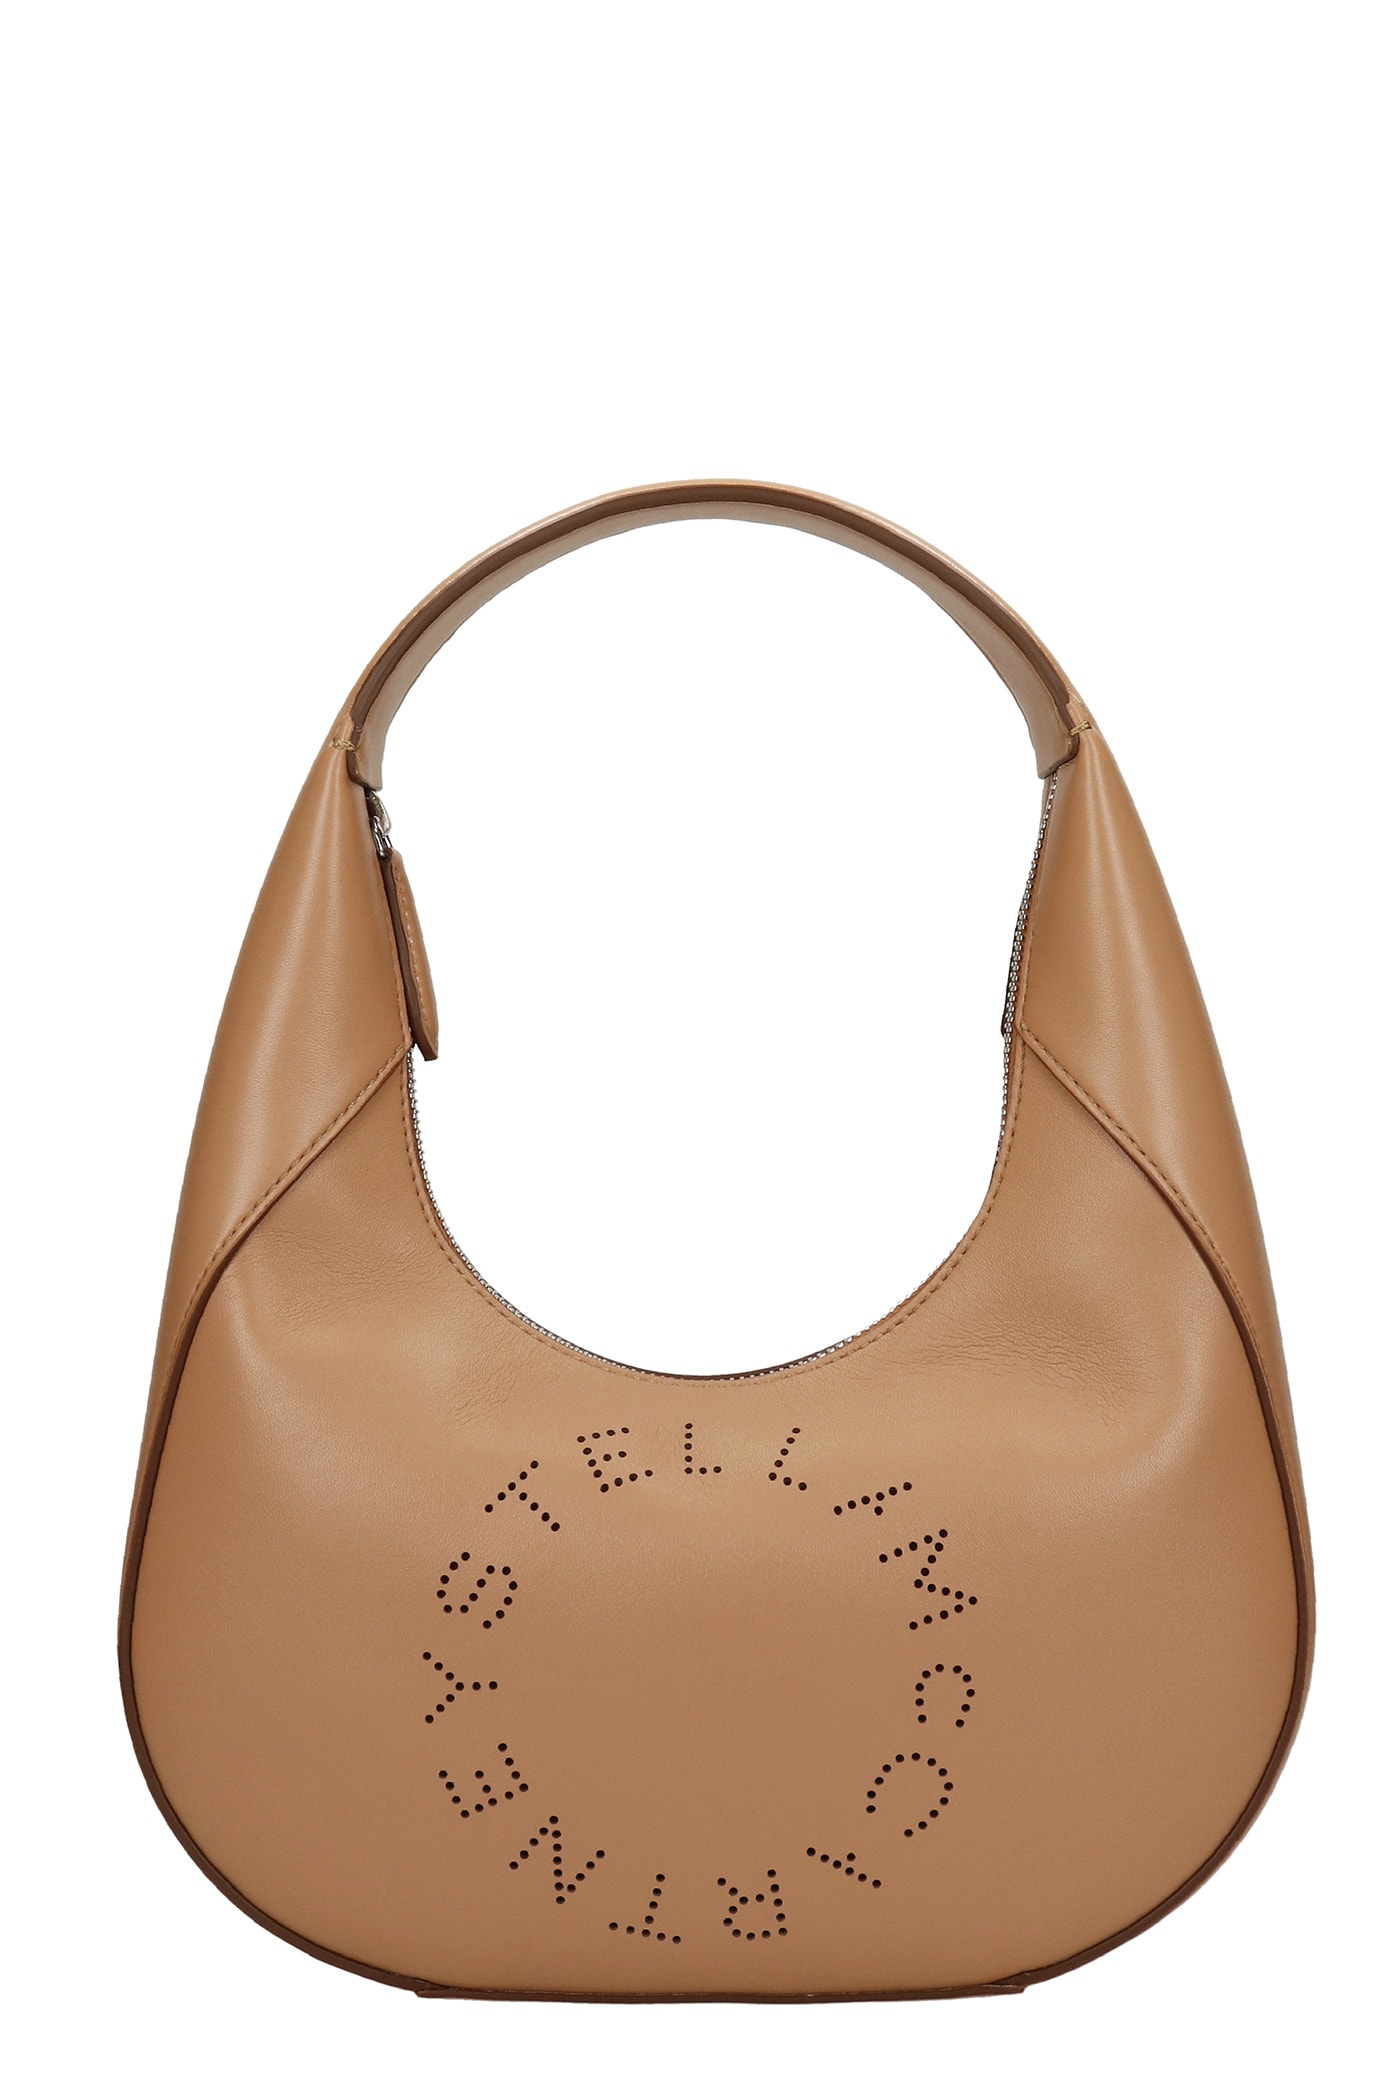 Stella McCartney Shoulder Bag In Camel Faux Leather